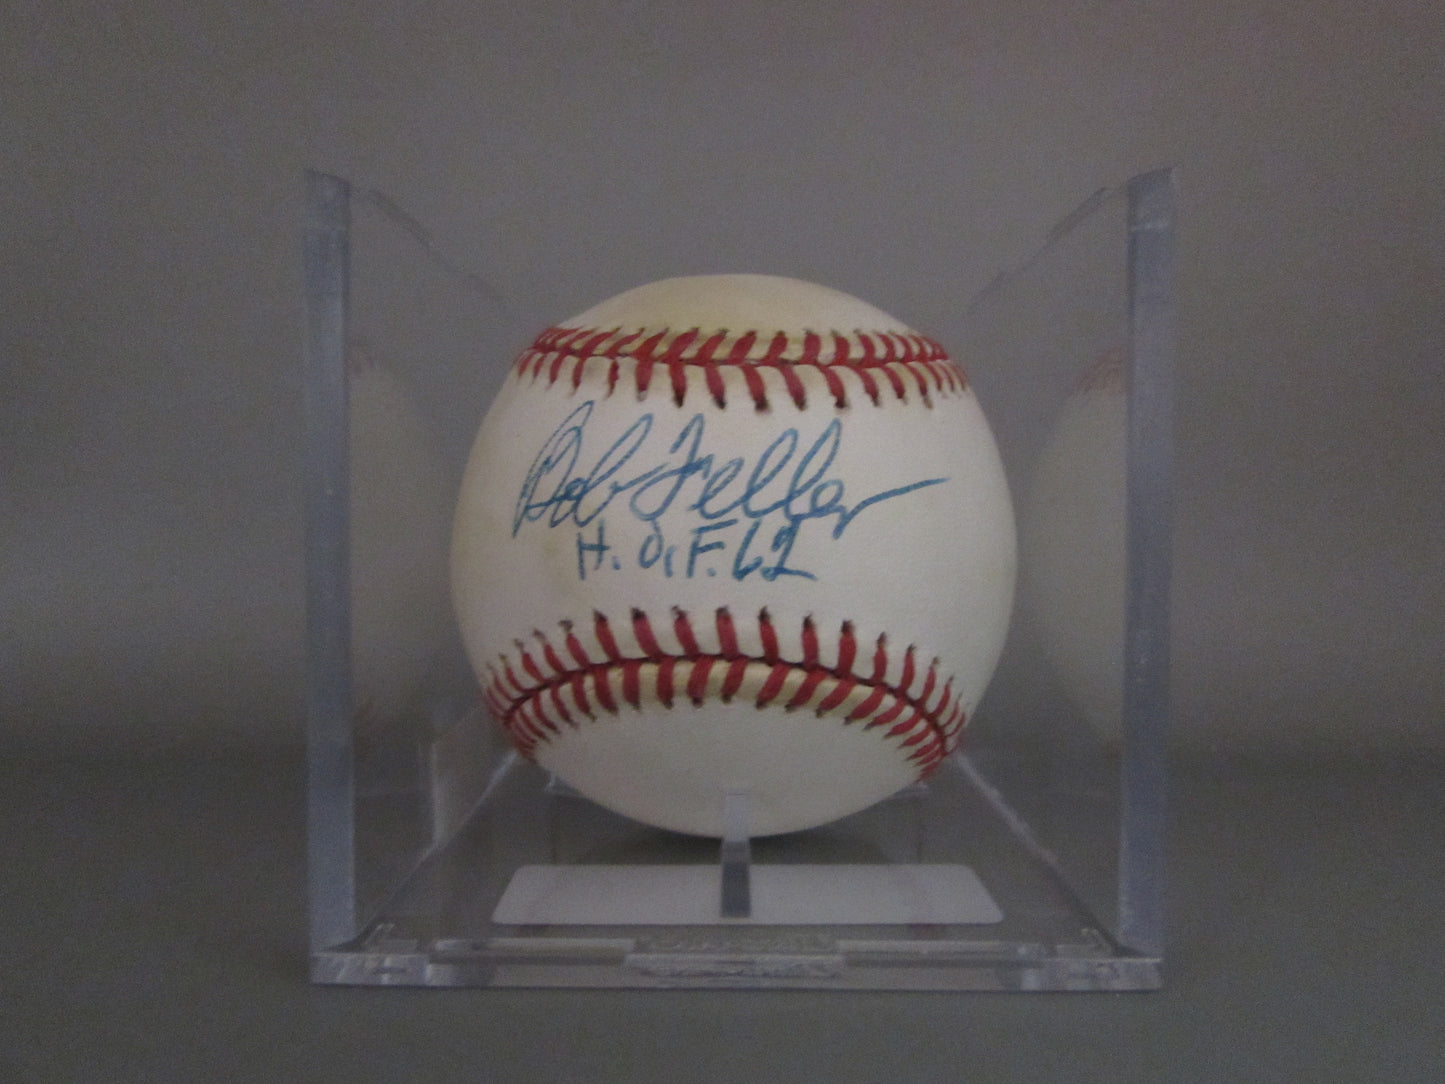 Bob Feller signed baseball